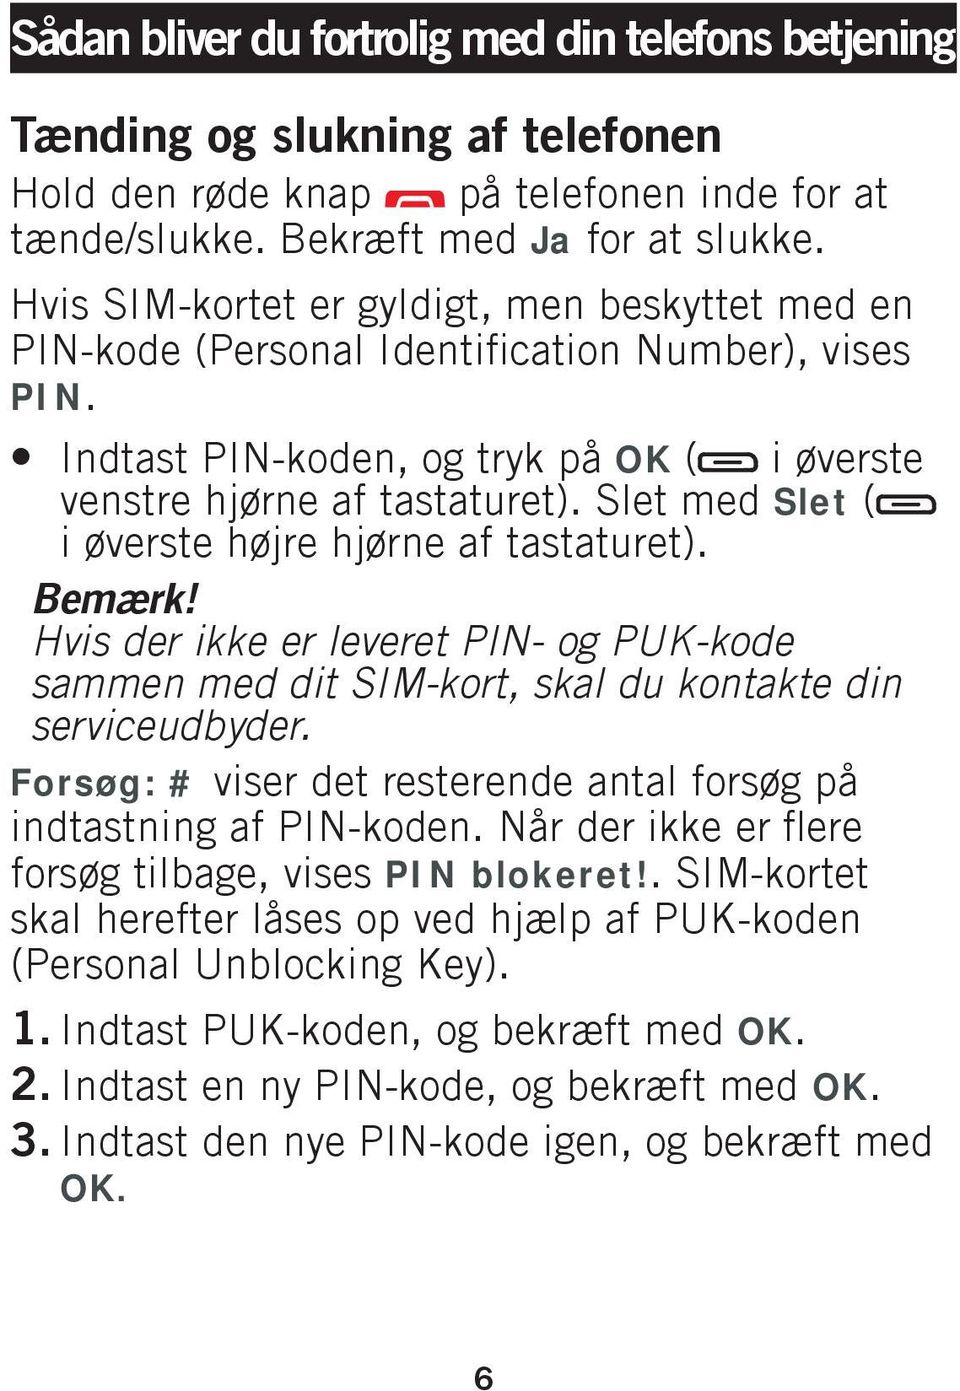 Slet med Slet ( i øverste højre hjørne af tastaturet). Bemærk! Hvis der ikke er leveret PIN- og PUK-kode sammen med dit SIM-kort, skal du kontakte din serviceudbyder.